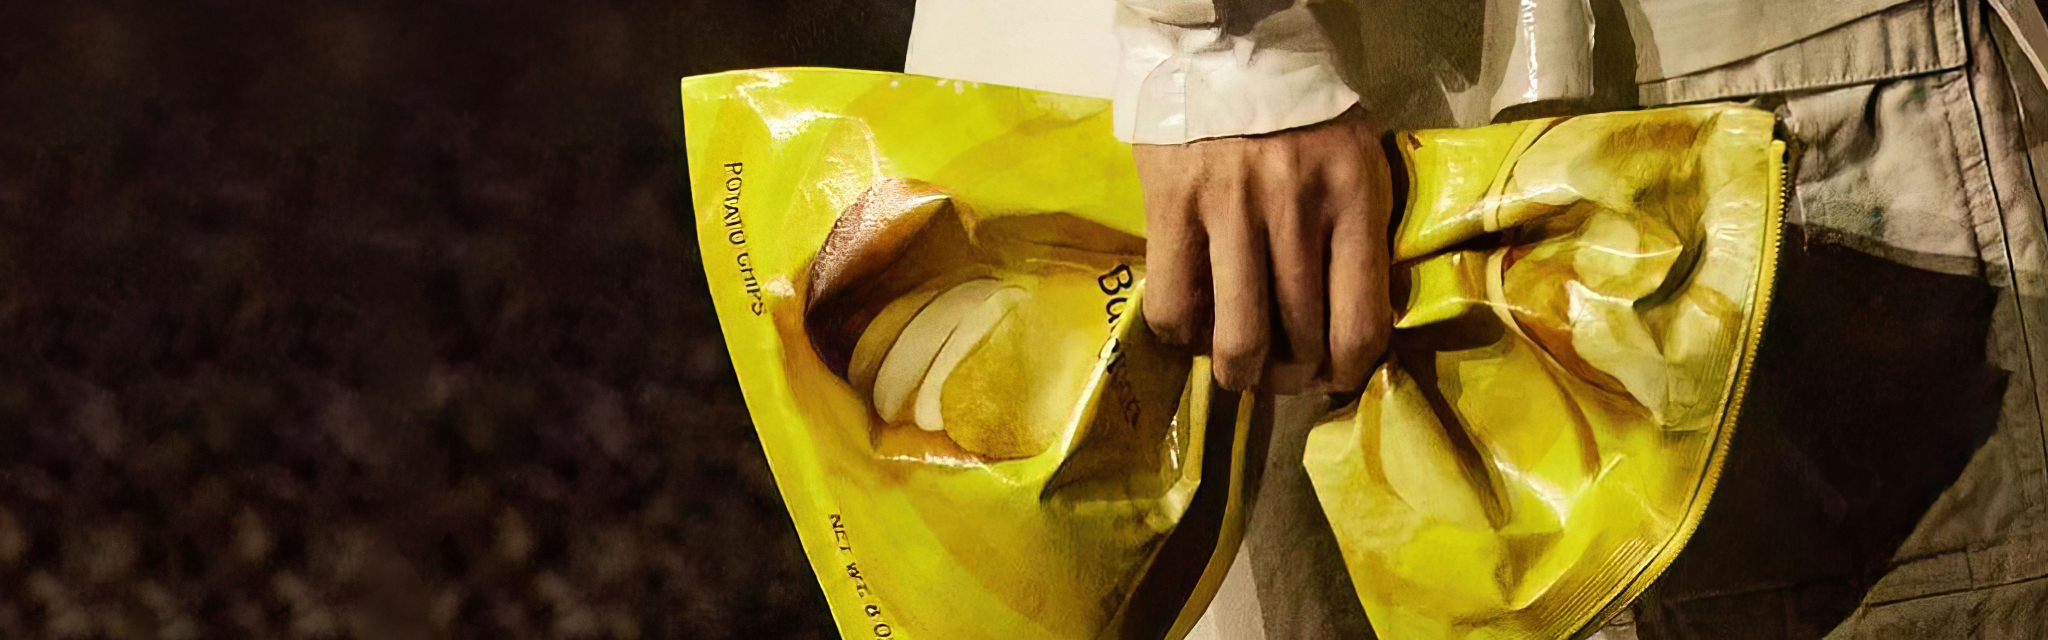 Een chipszak, kikker of friet: dit is alles wat je wil weten over de gekke novelty bag-trend 